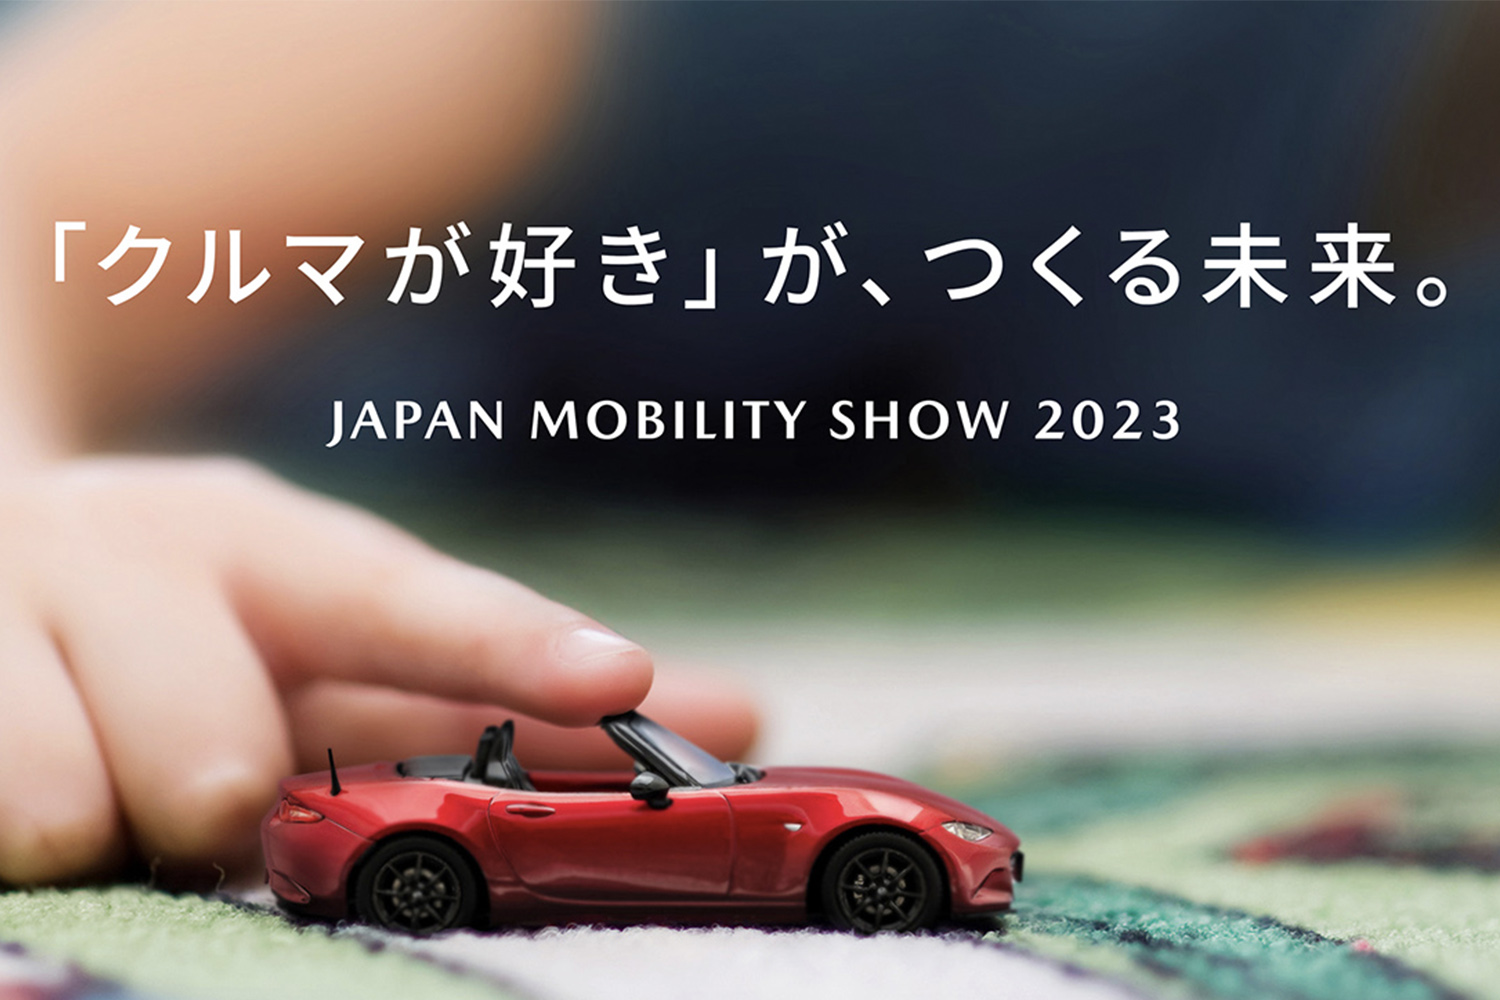 マツダがジャパンモビリティショー2023の出展概要を発表